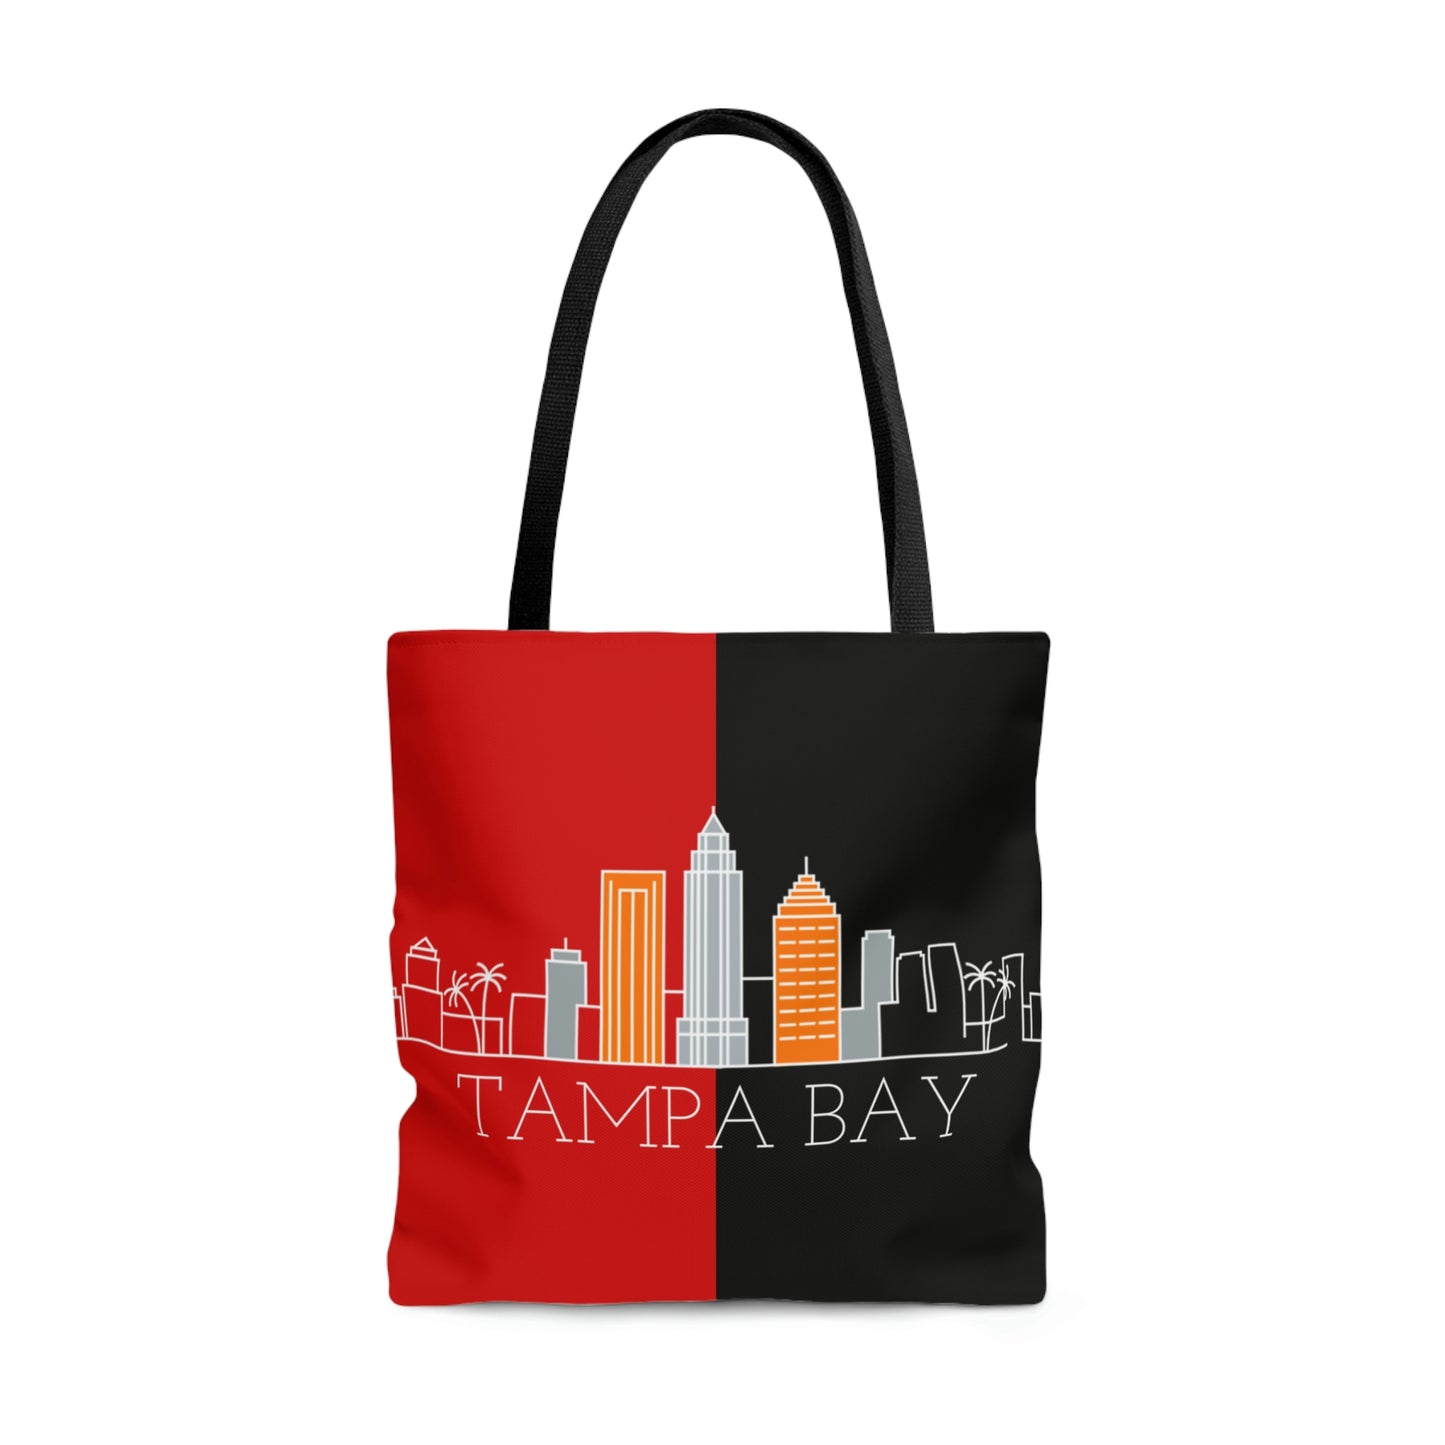 Tampa Bay - City series  - Tote Bag